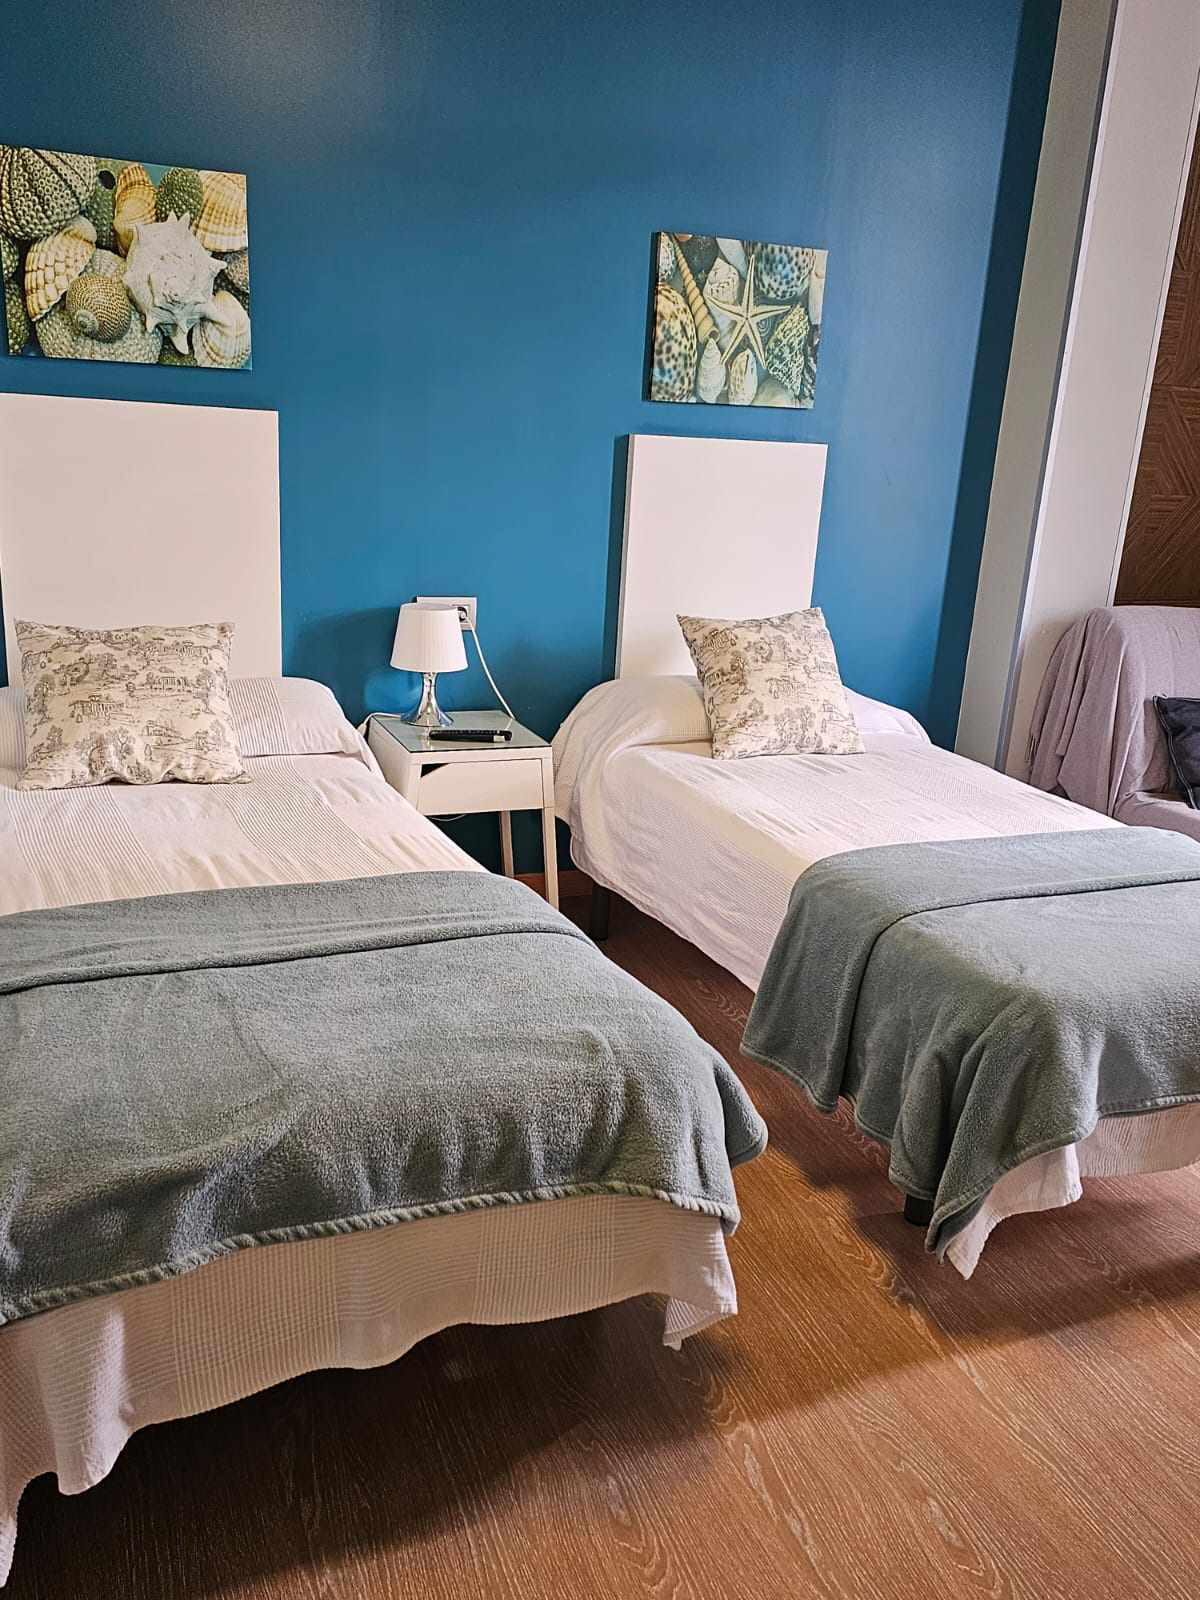 habitación doble con dos camas con mantas de color azul y blanco, y la pared en color azul. Hay dos camas hechas cada cama tiene un cuadro de decoración encima de la misma